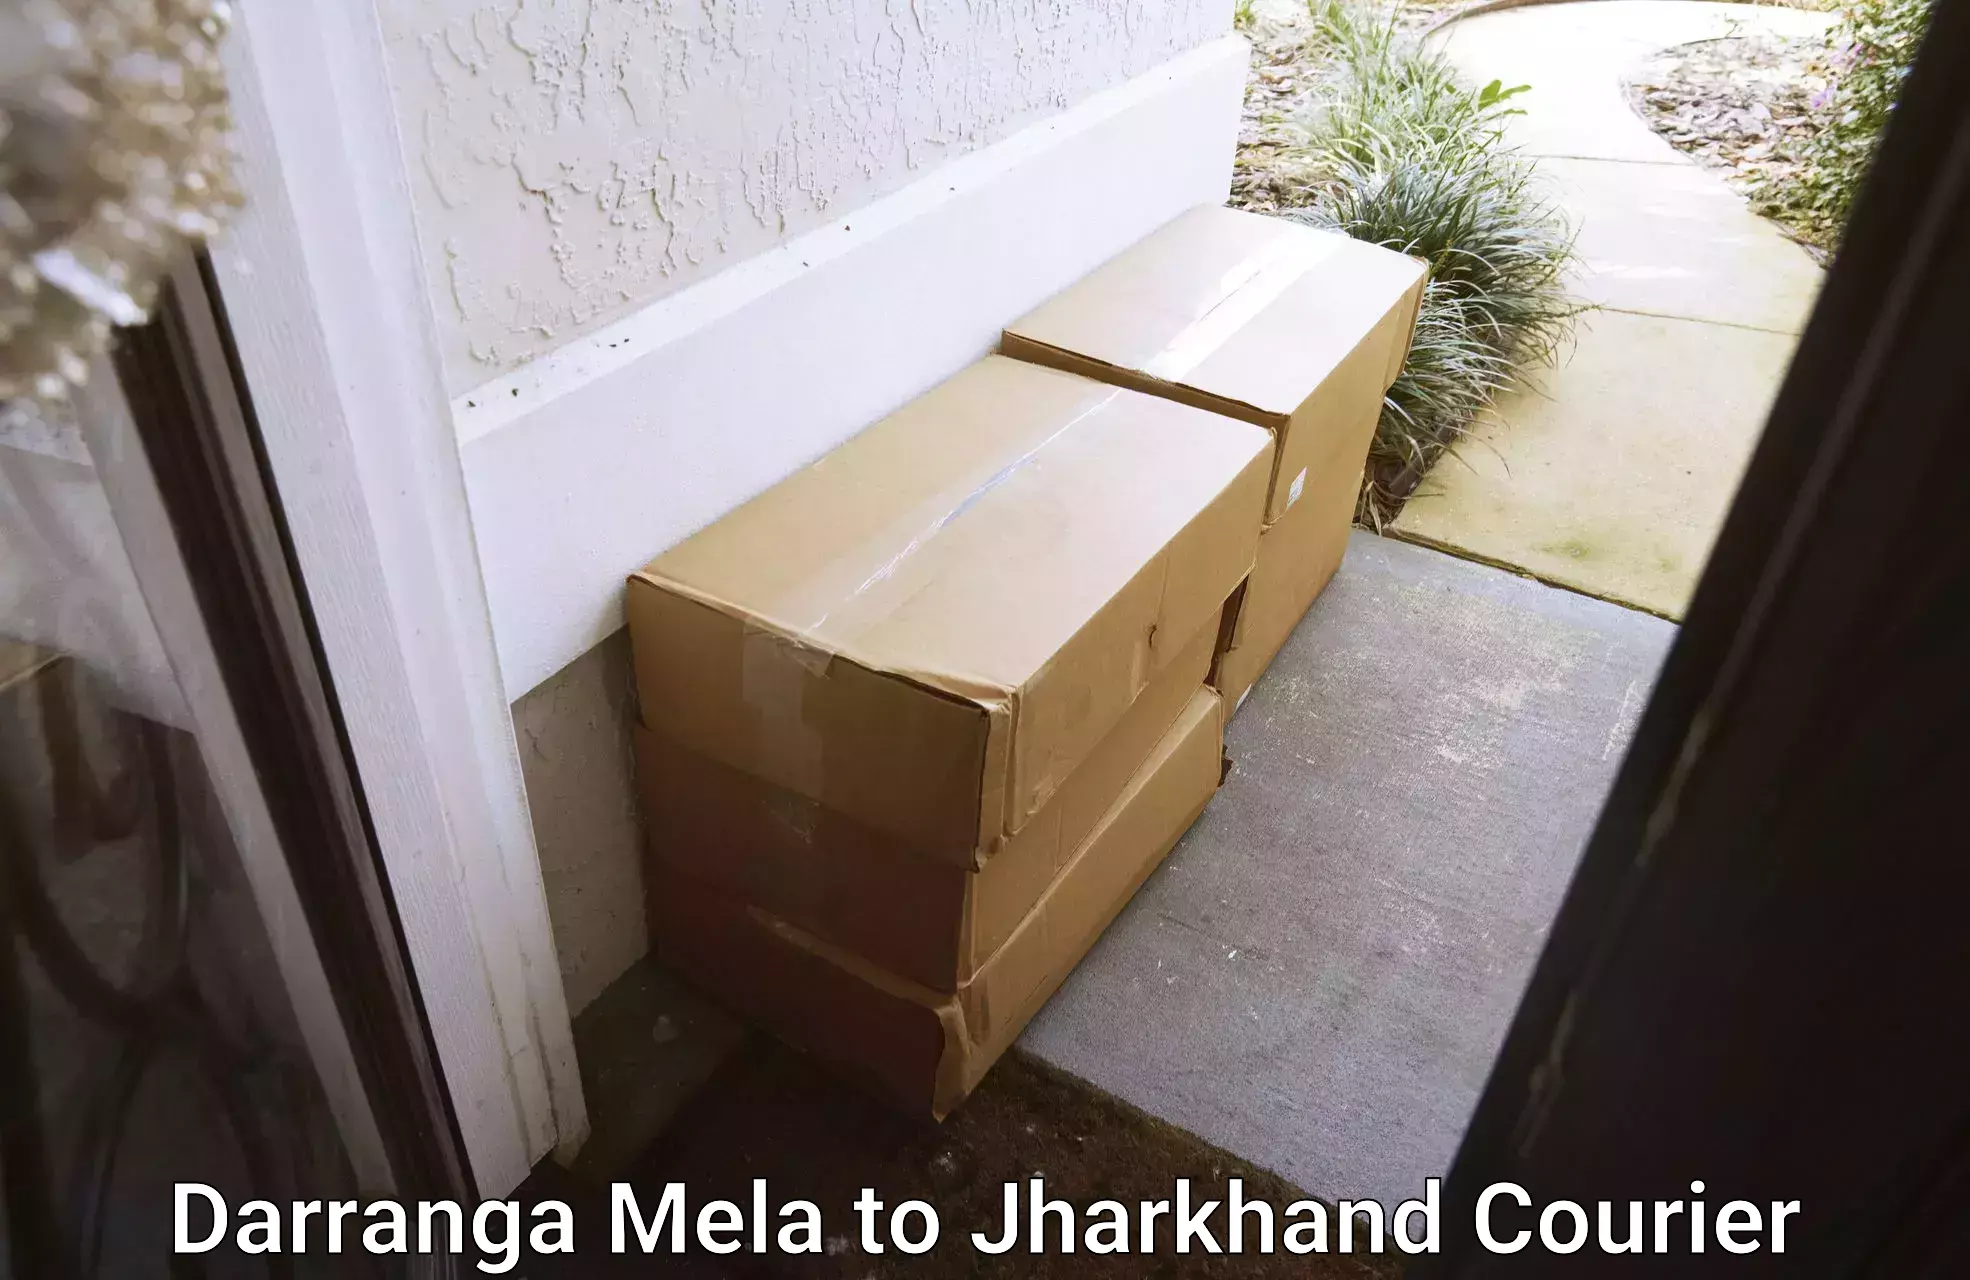 Business courier solutions Darranga Mela to Jharkhand